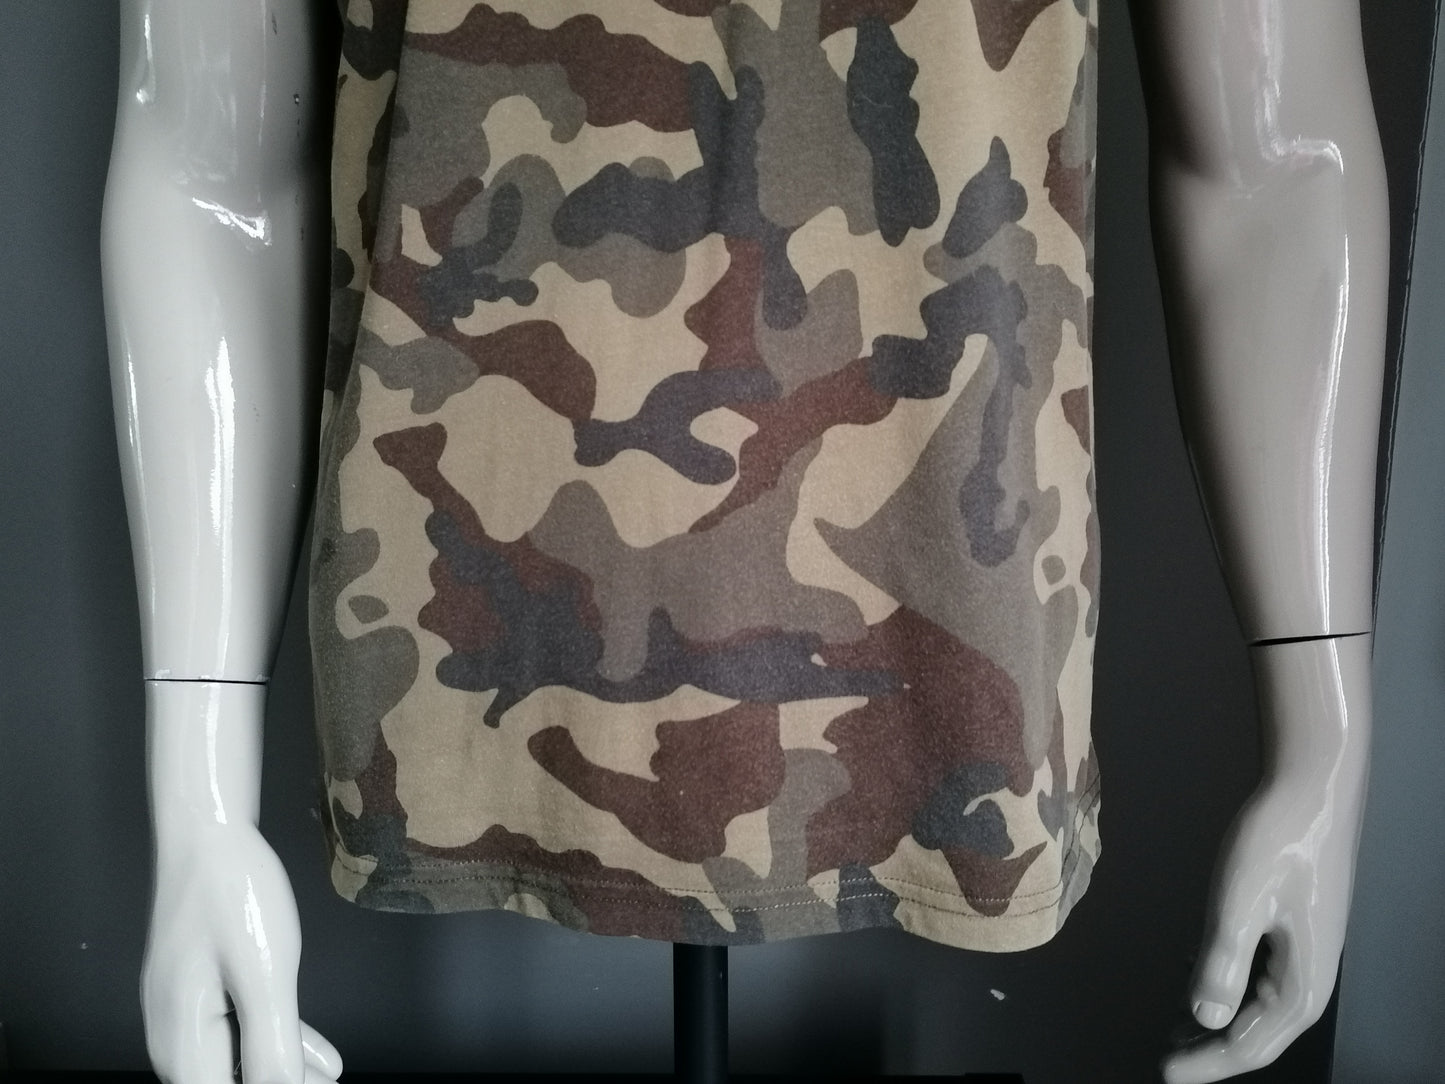 Zara Man Shirt. Bruin Groene Army print. Maat L.